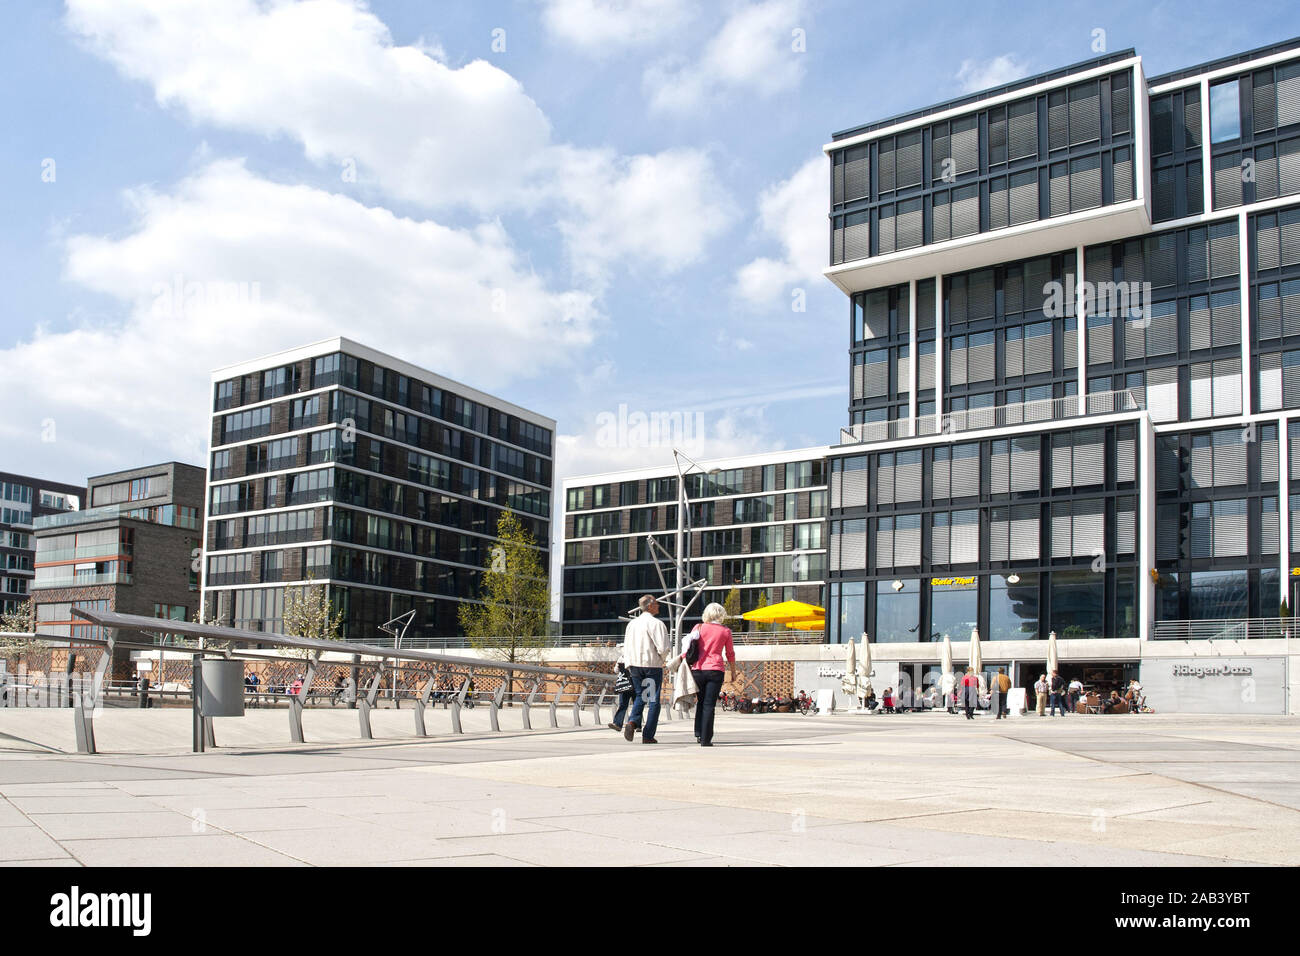 Moderne Architektur in der HafenCity in Hamburg |Modern architecture in the HafenCity in Hamburg| Stock Photo